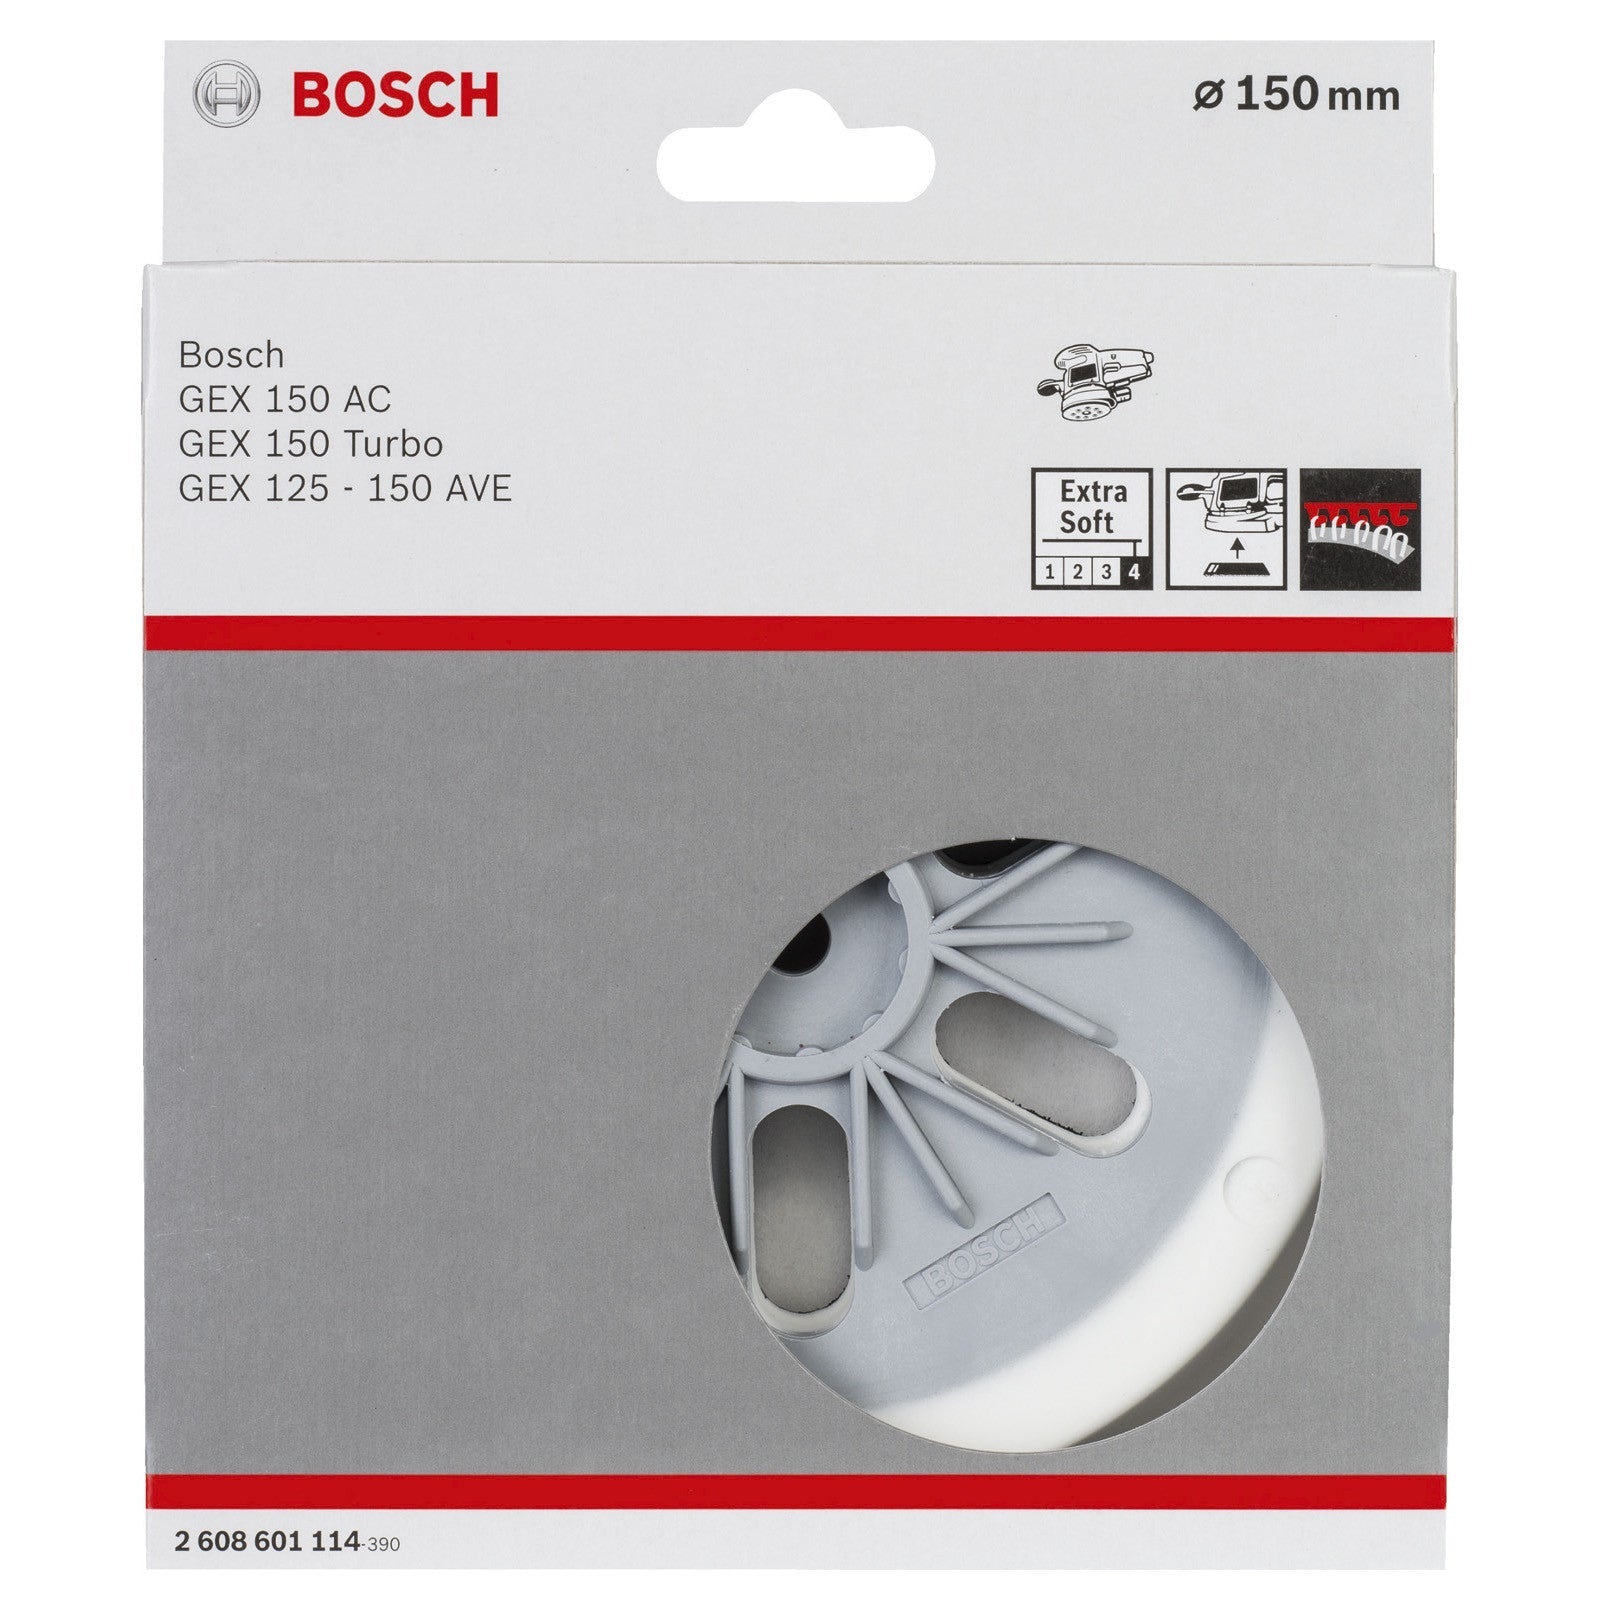 Bosch Sanding pad Extra Soft for random orbital sanders, 150 mm 2608601114 Power Tool Services